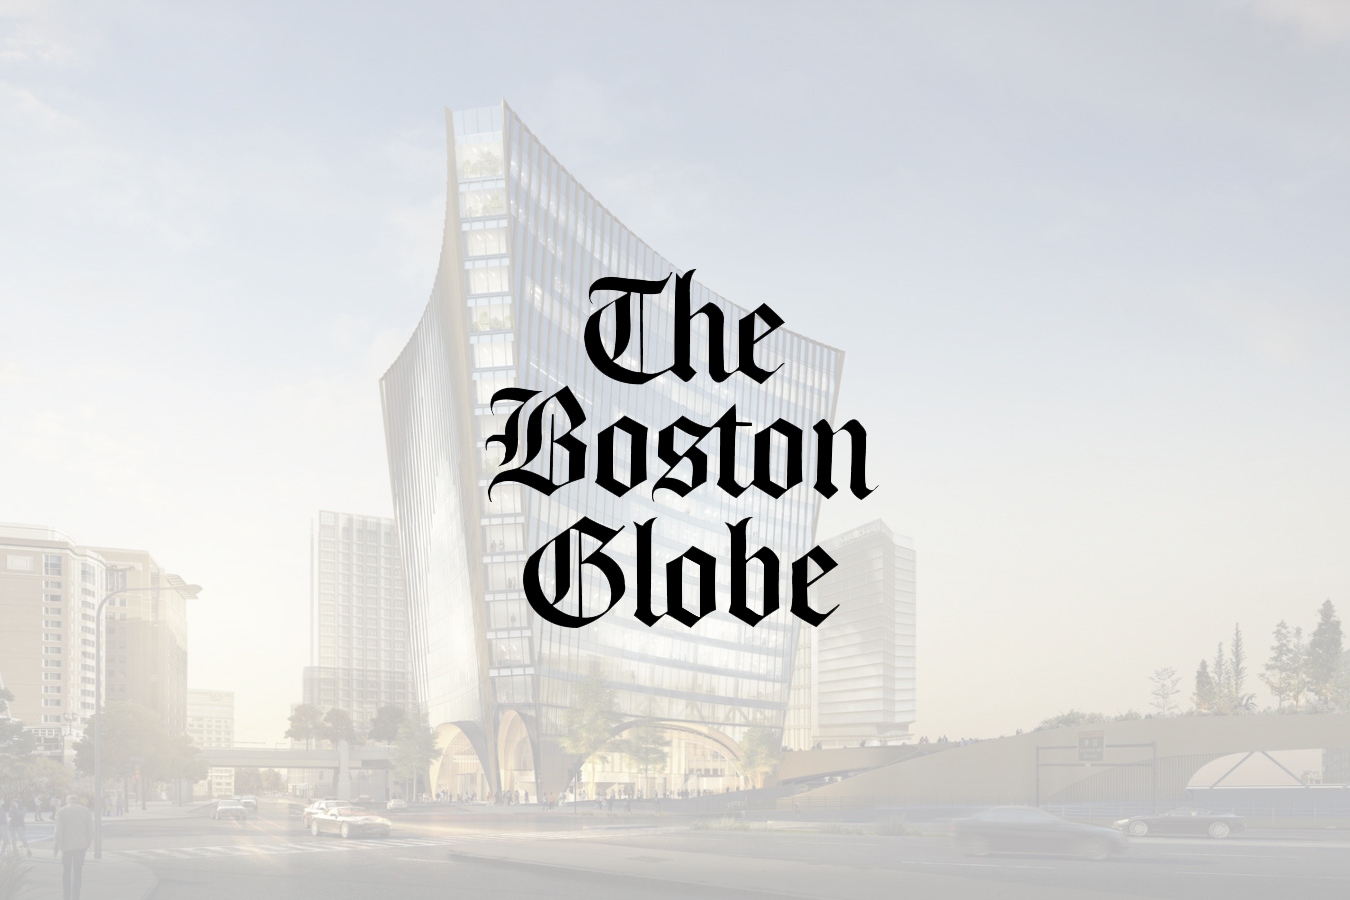 Boston Globe: Great Hall in Seaport, truly public destination